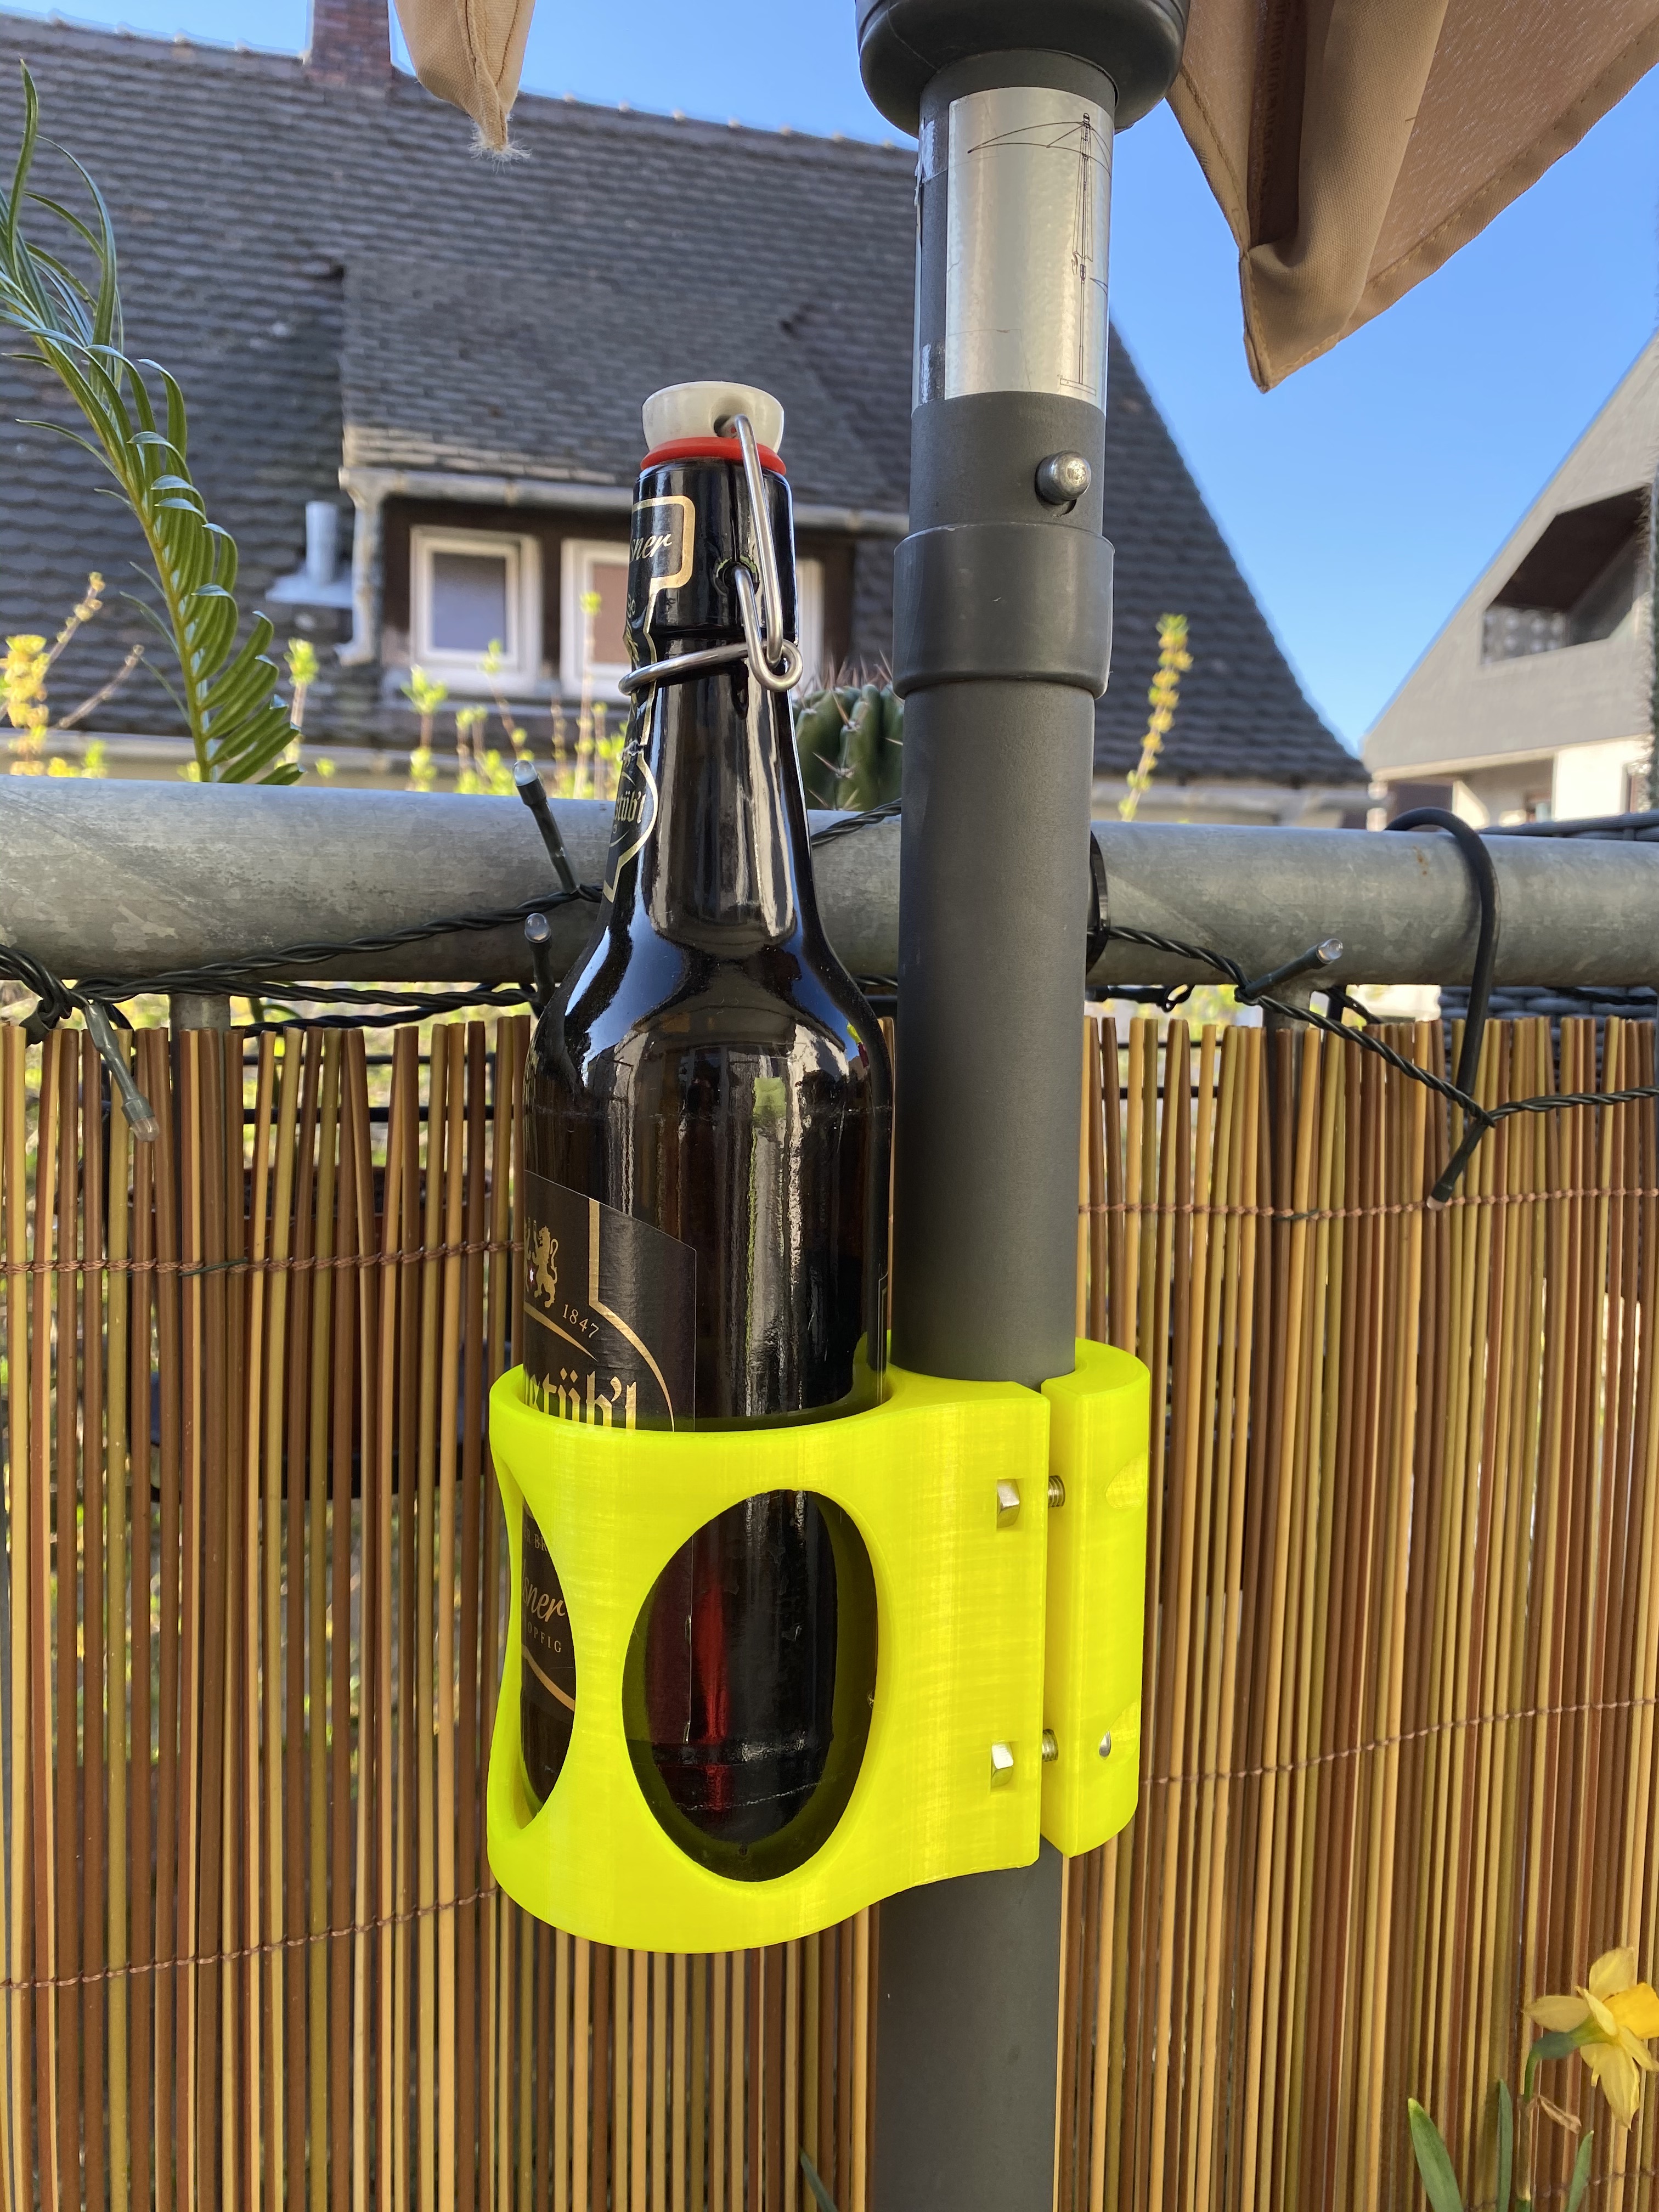 Umbrella beer bottle holder (Bierflaschenhalter für Sonnenschirme)